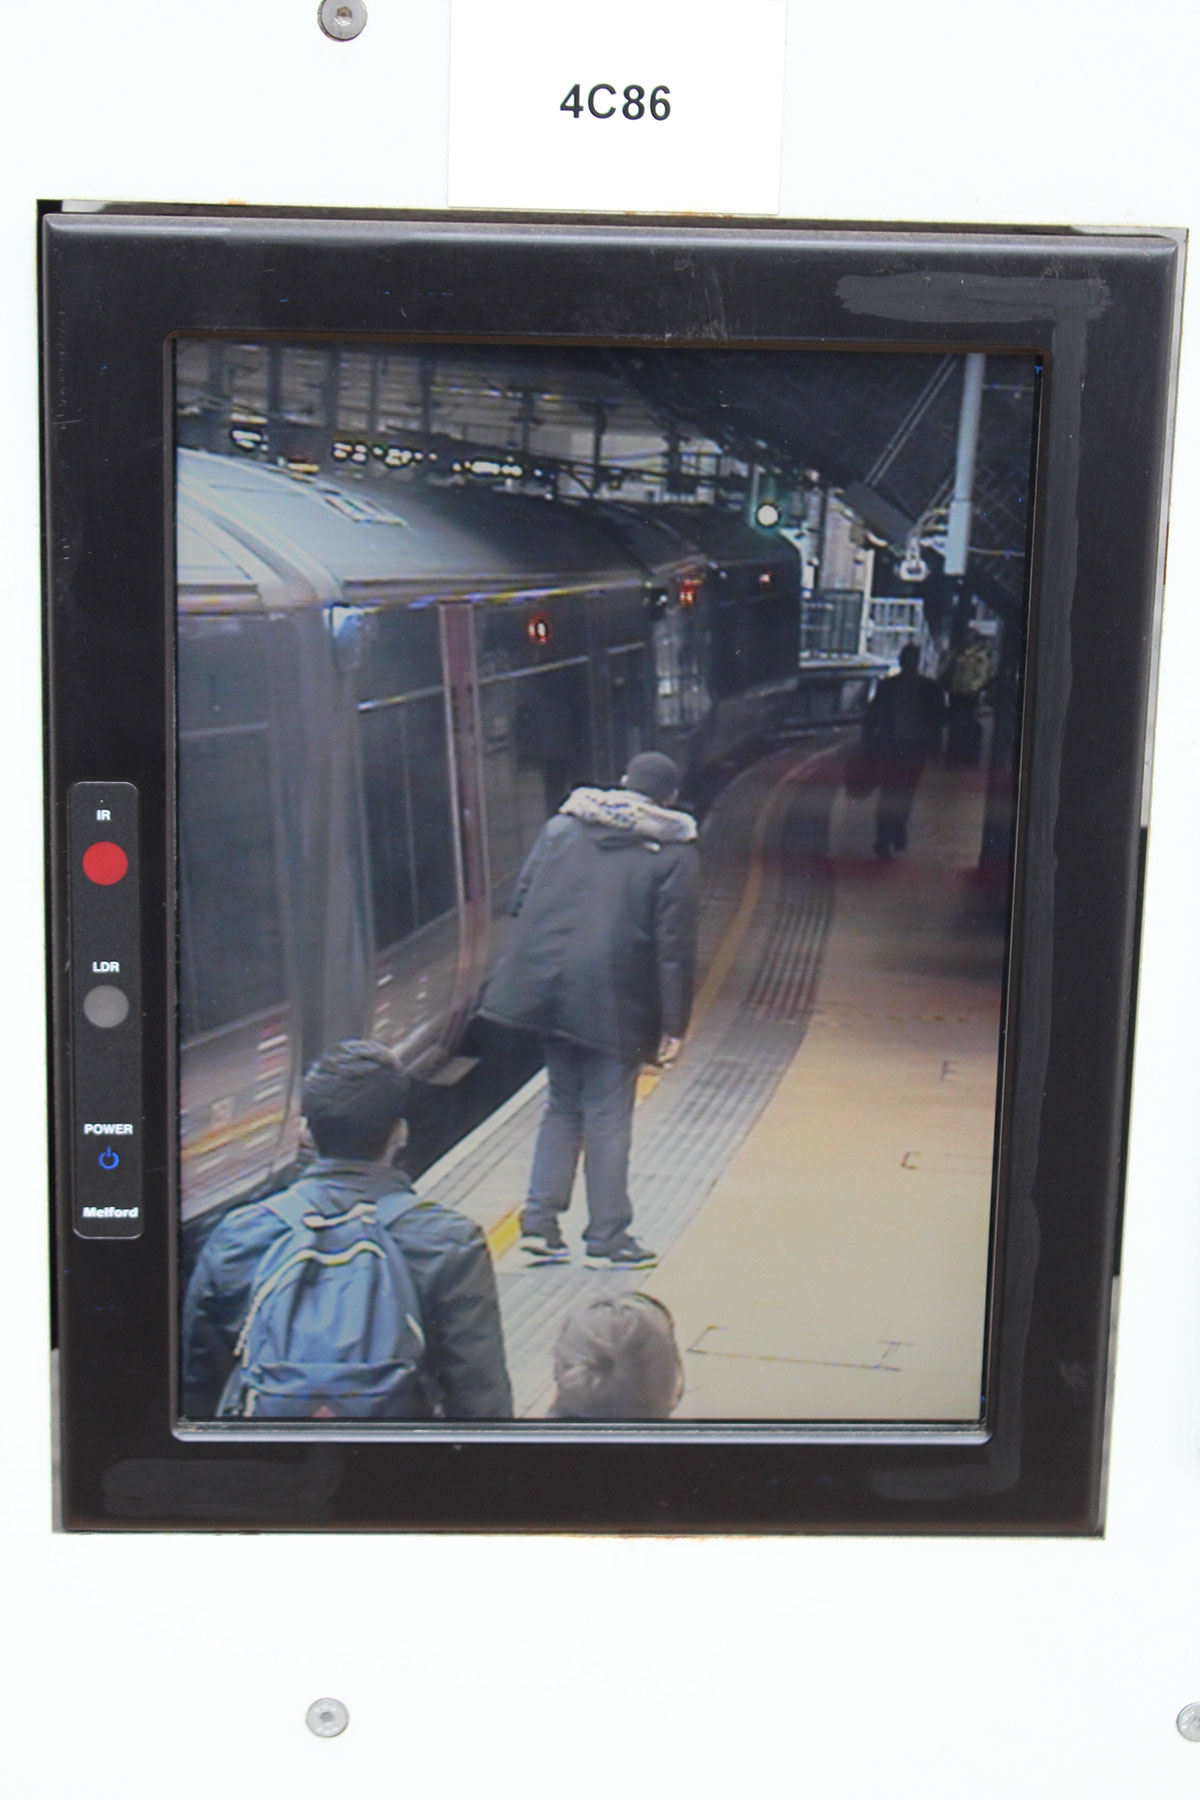 Train-station surveillance